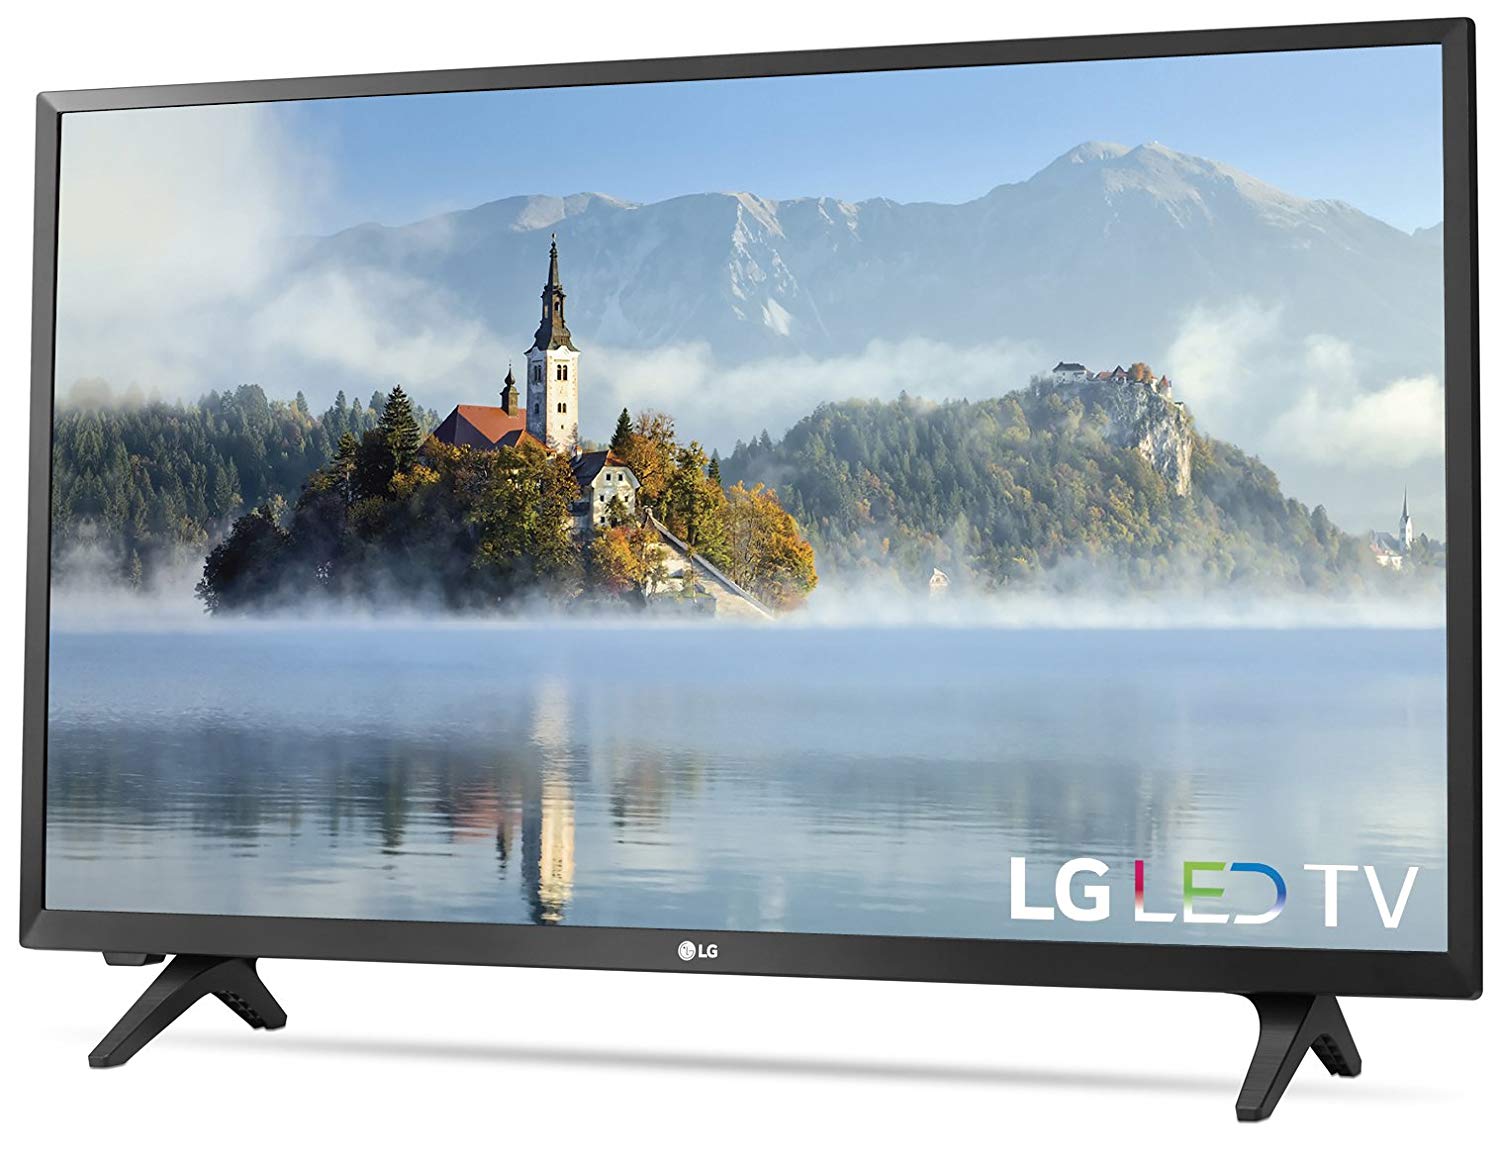 LG Eletrônica 32LJ500B TV LED 720p de 32 polegadas (modelo 2017)